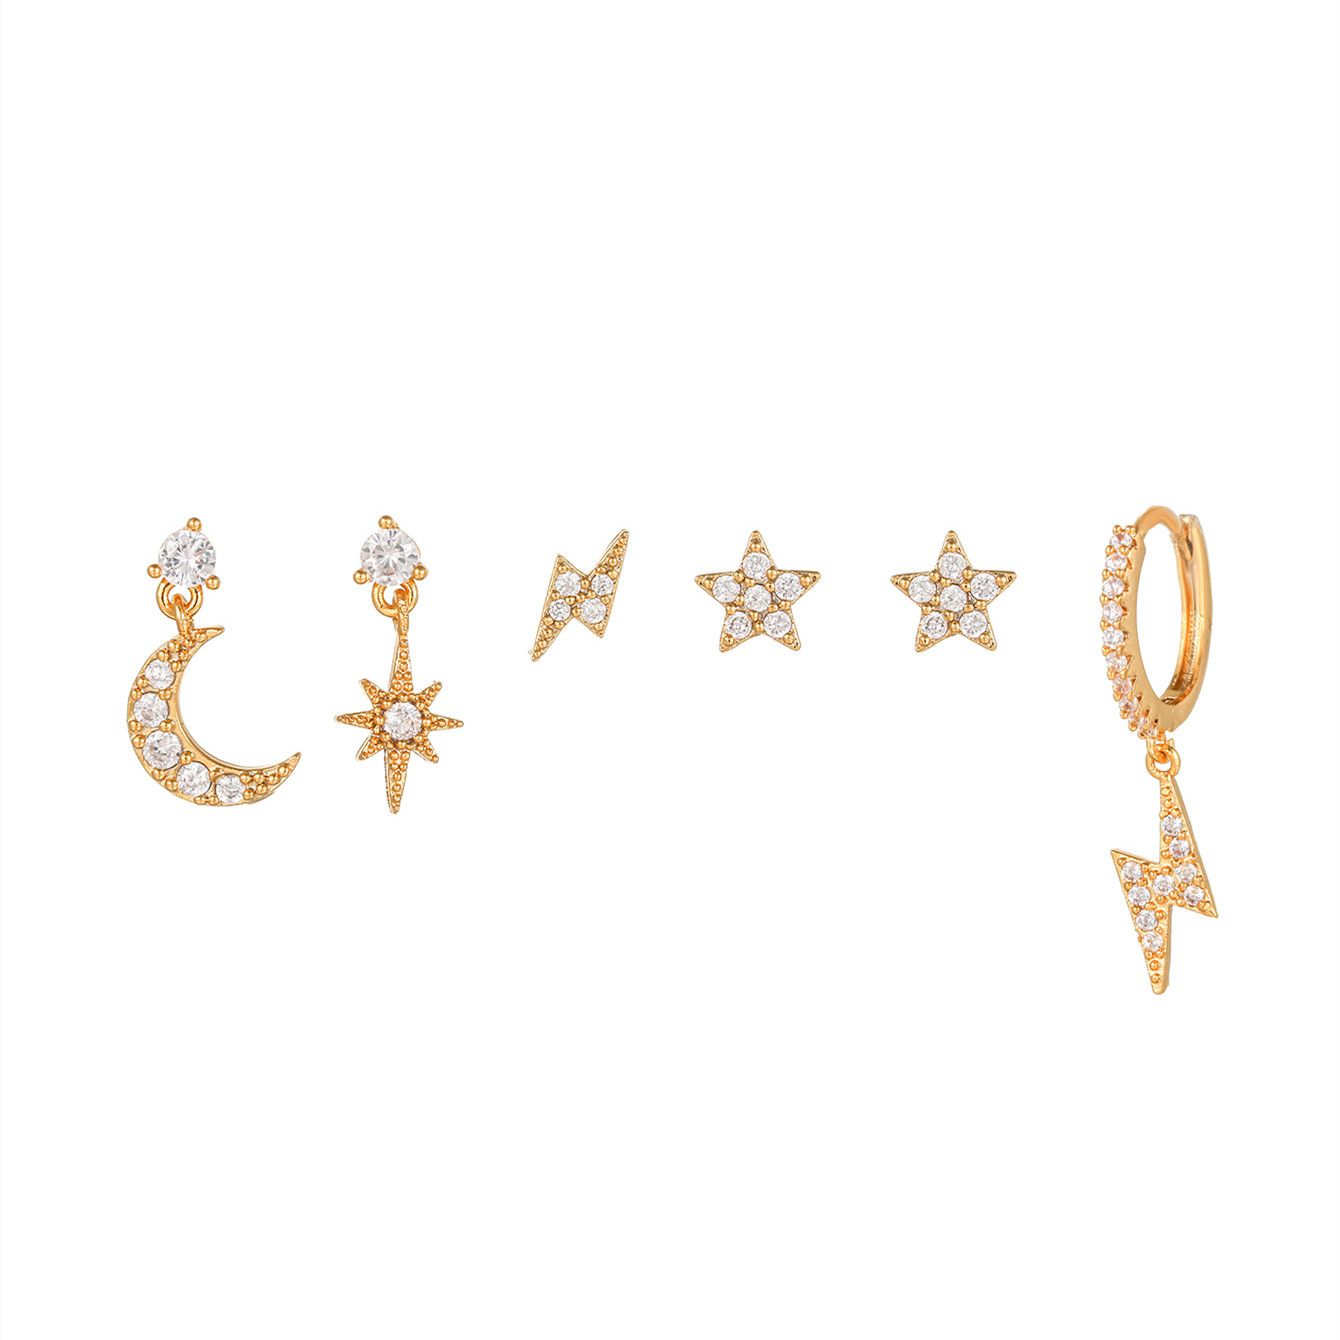 Sparkly Rhinestone Diamond Hoop Earrings Jewelry Set For Women